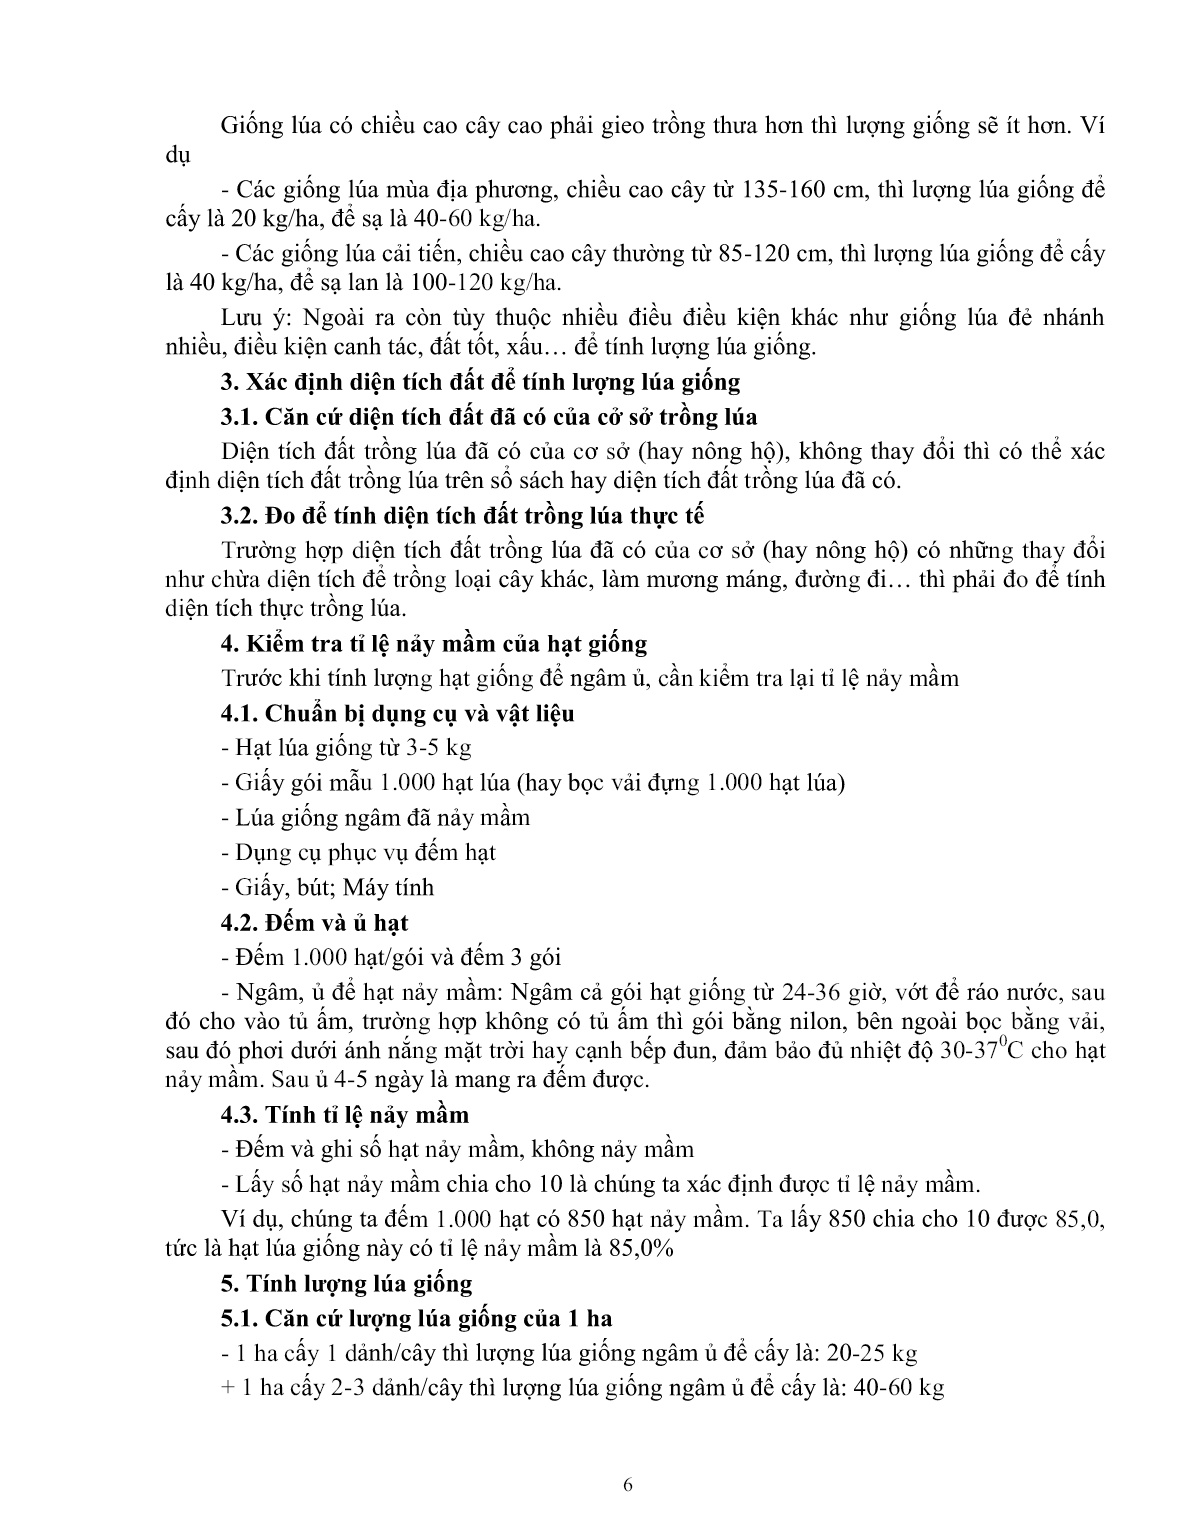 Giáo trình mô đun Gieo trồng lúa (Trình độ: Đào tạo dưới 03 tháng) trang 6